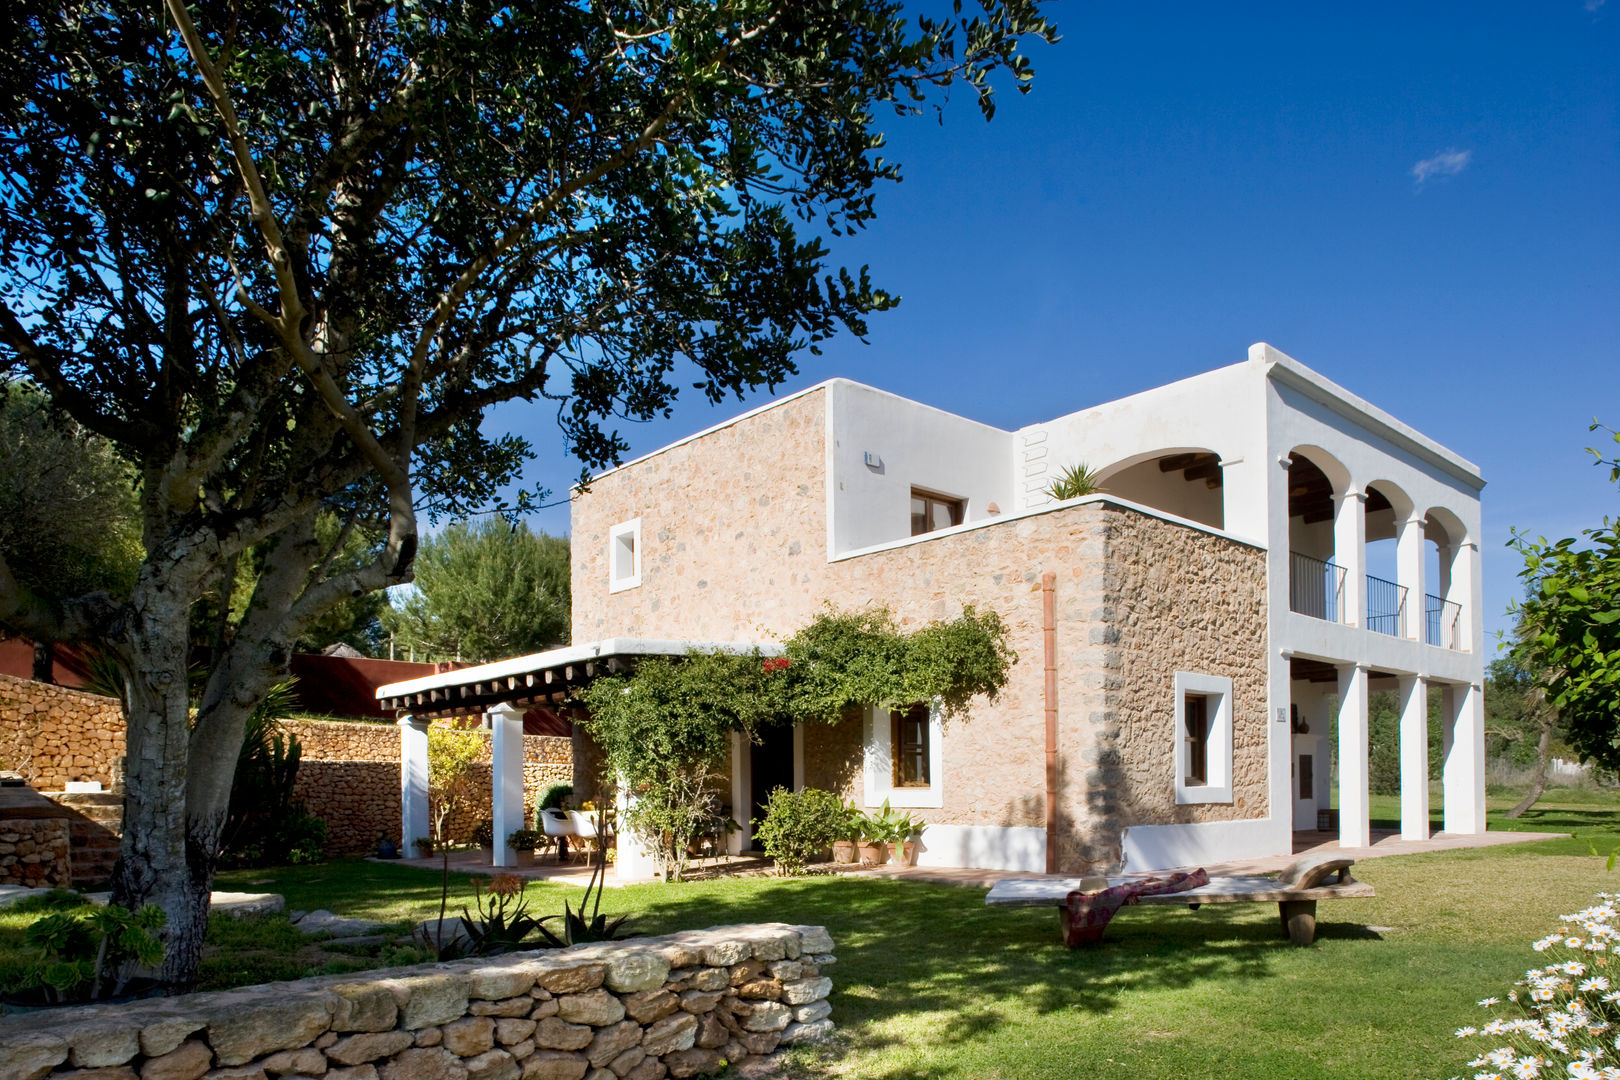 Casa en Ibiza, recdi8 recdi8 Country style house